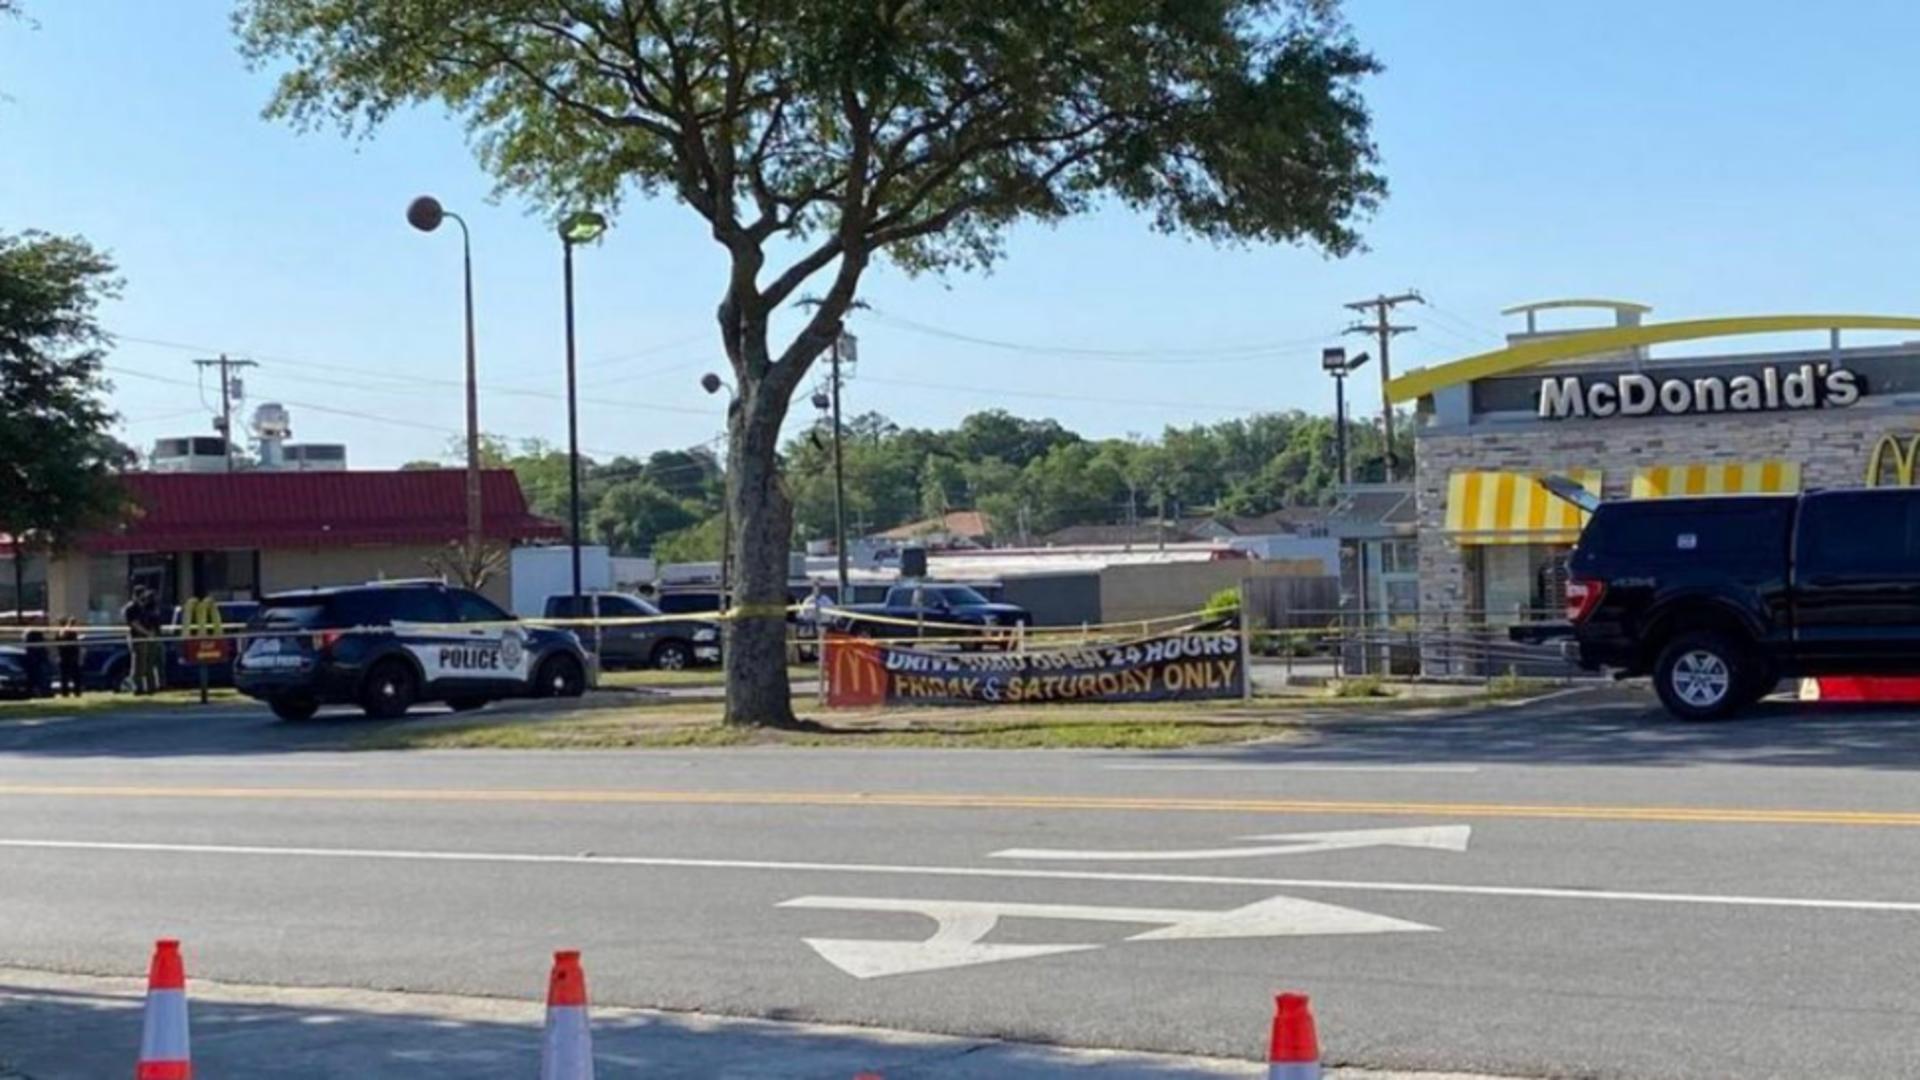 Atac armat la un restaurant McDonald's din SUA. Autoritățile anunță că 4 persoane sunt decedate